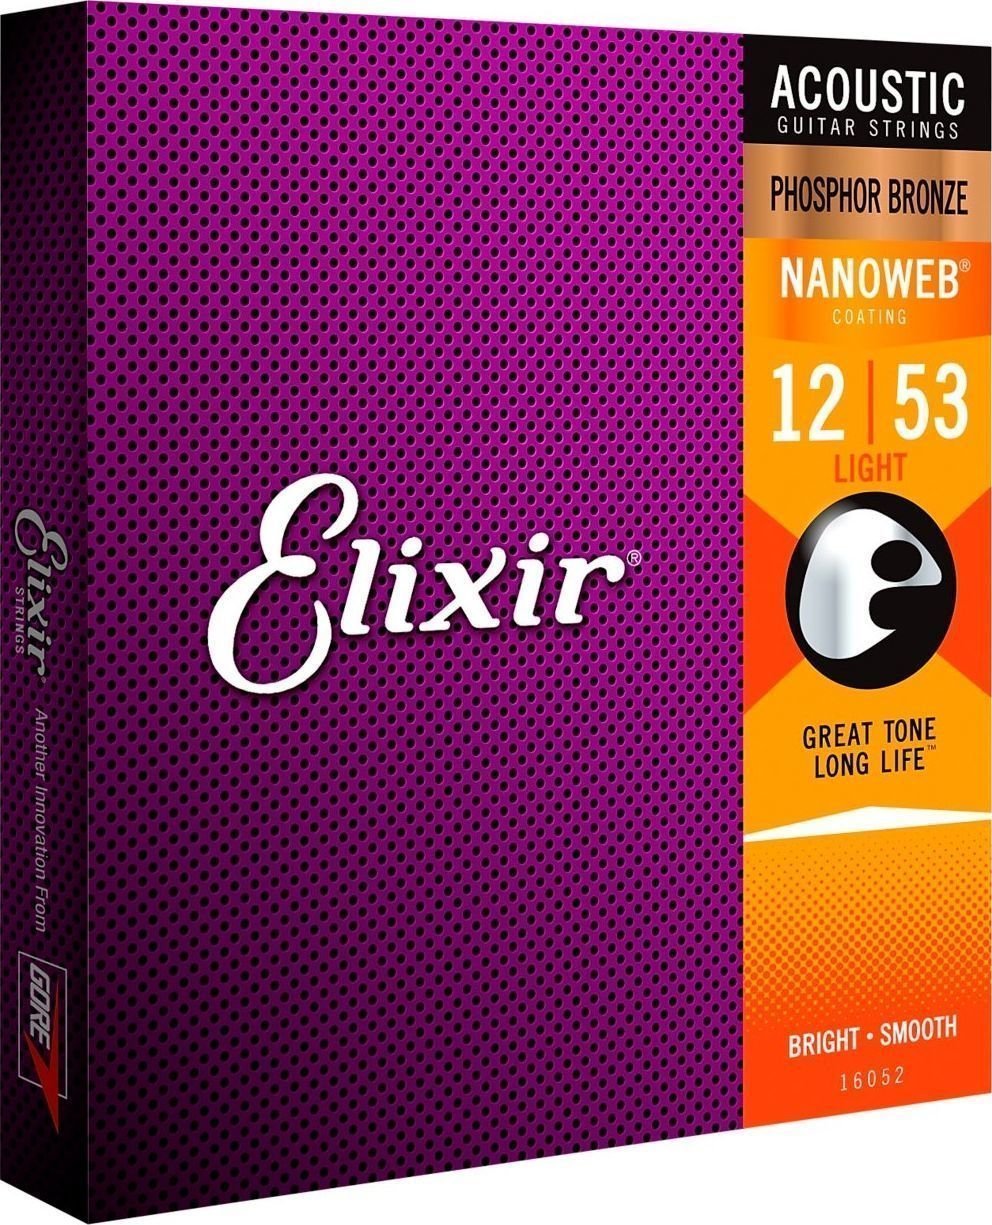 Cordes de guitares acoustiques Elixir 16052 Nanoweb 12-53